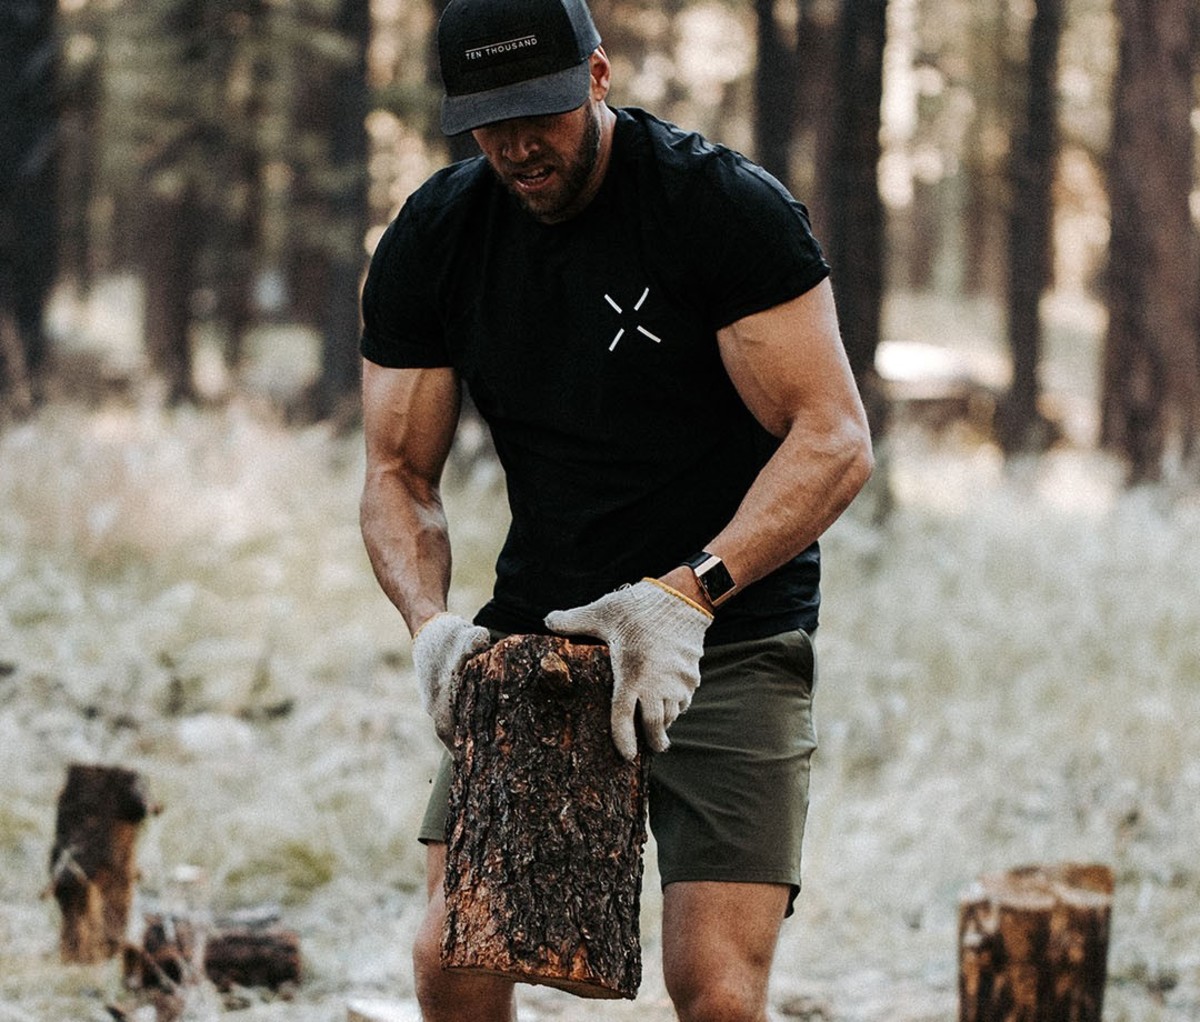 Man wearing black T-shirt chopping wood in gloves